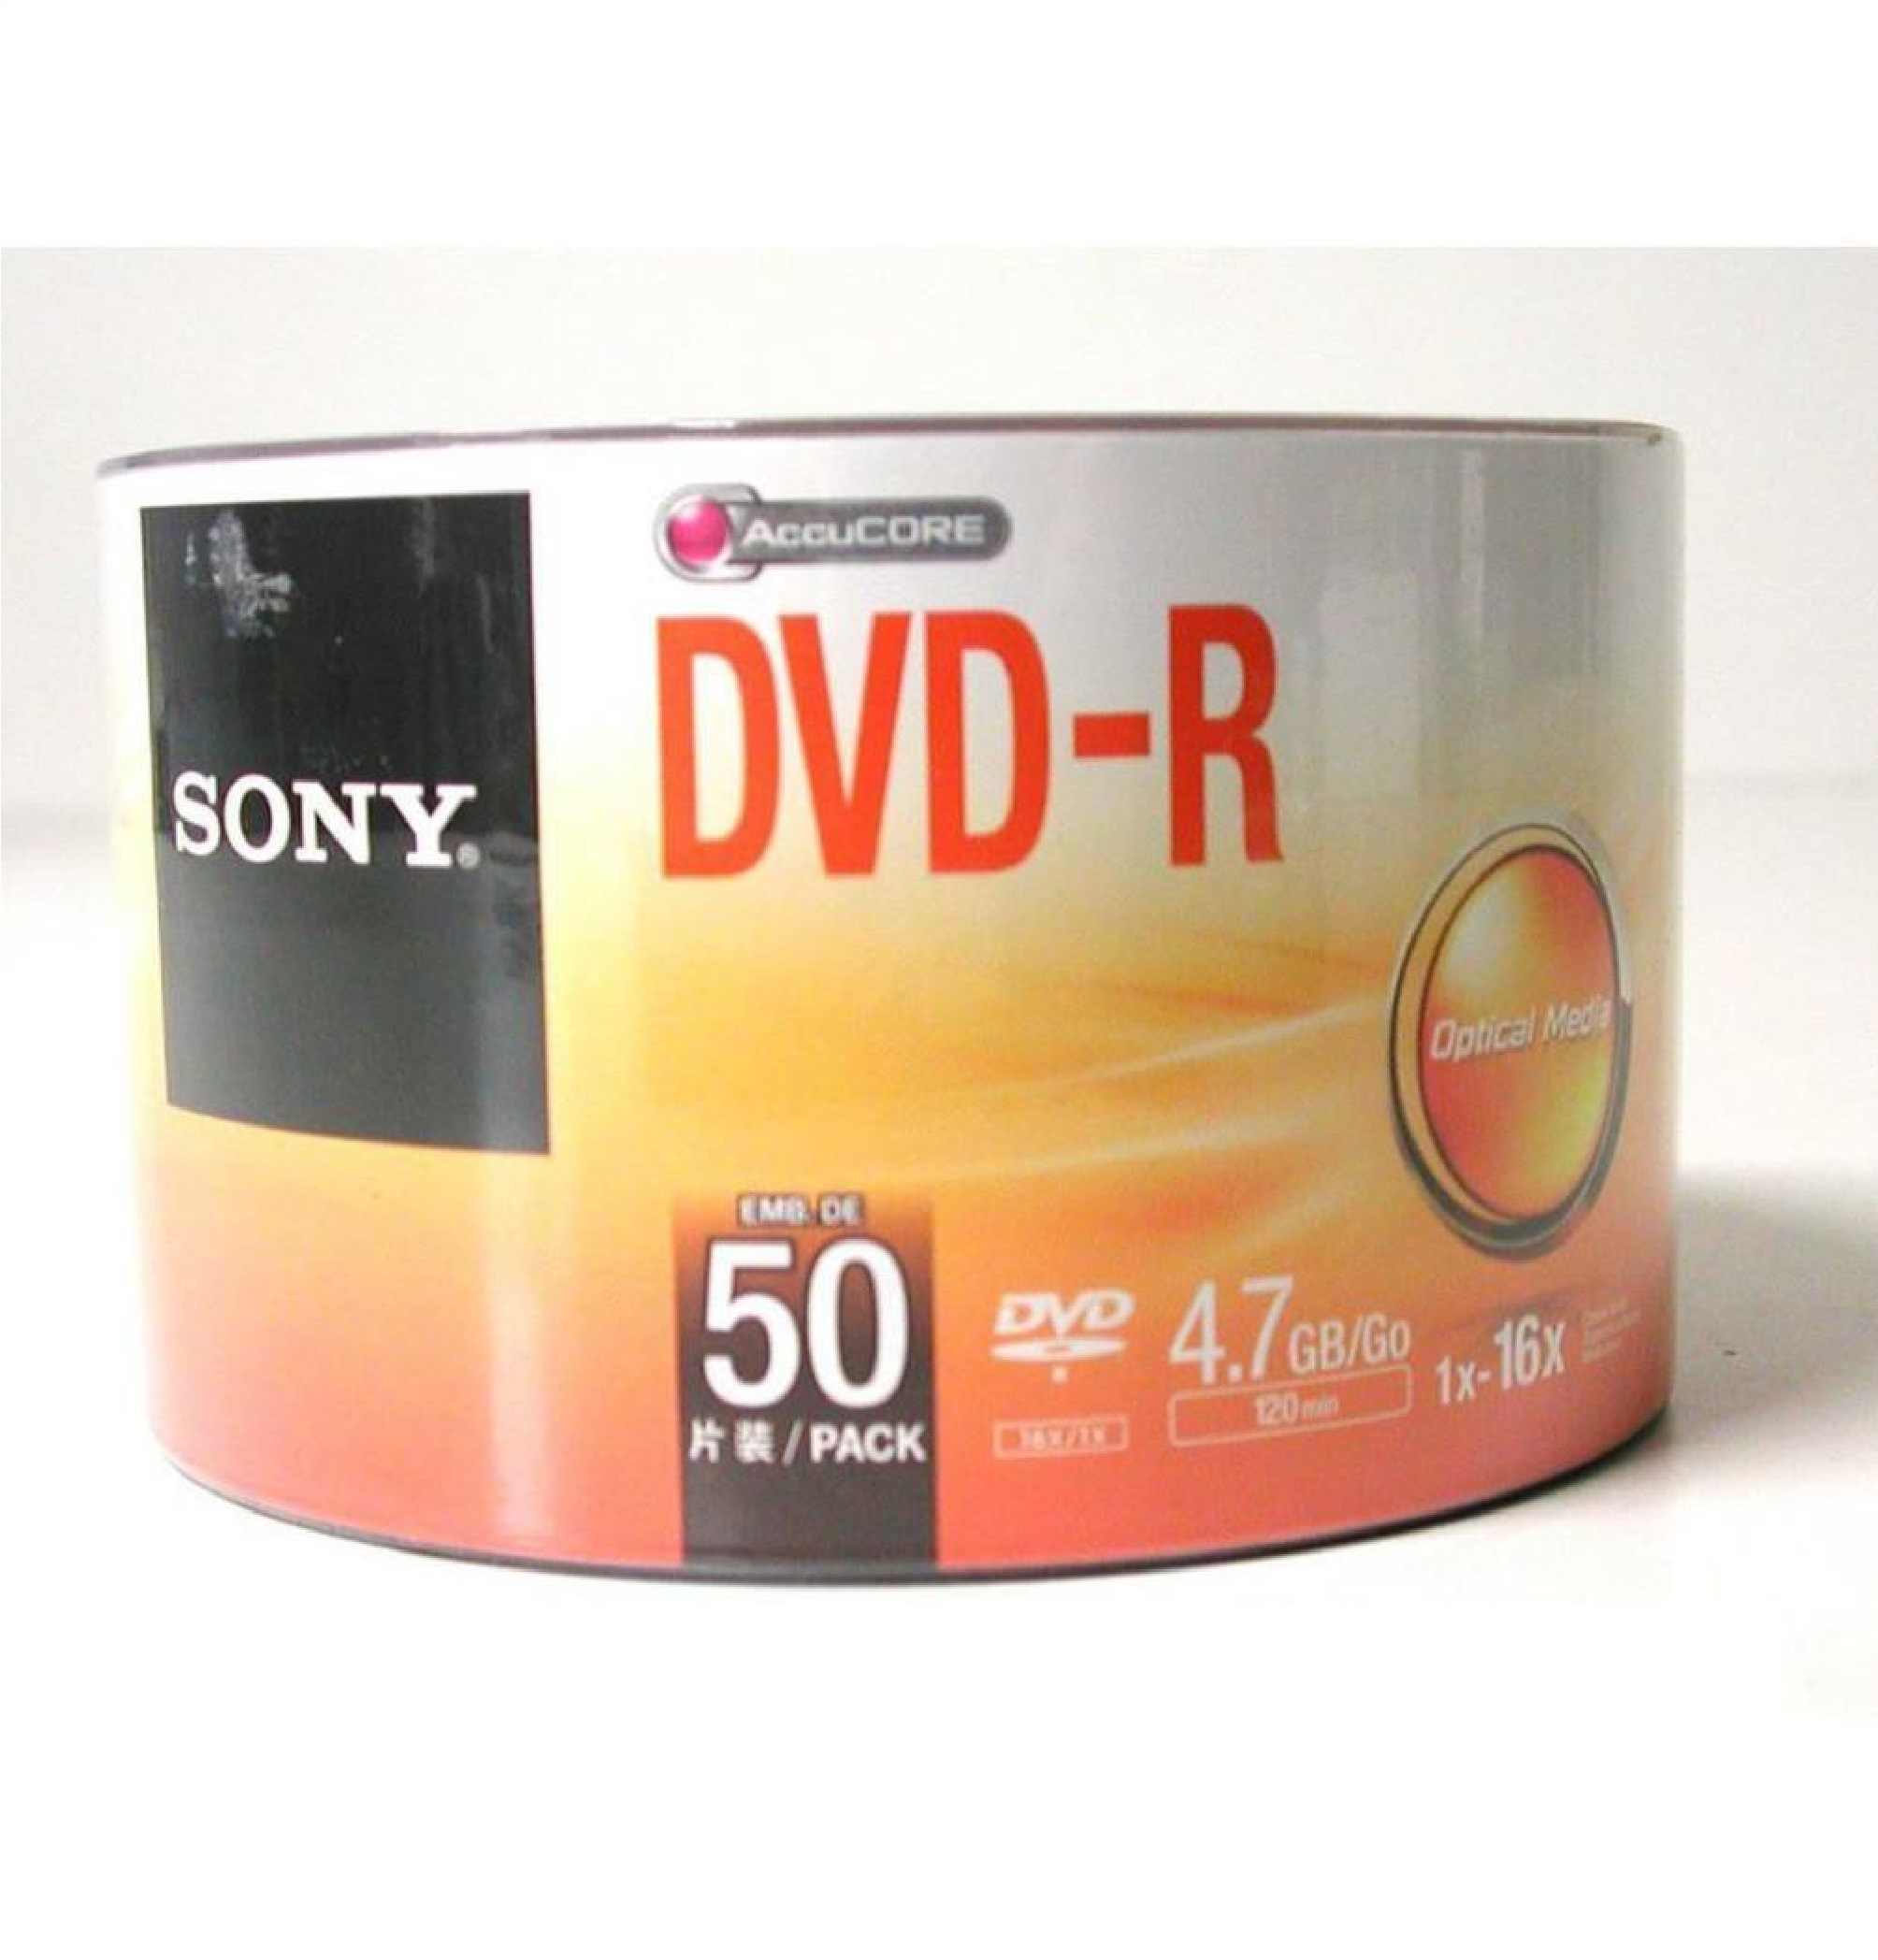 DVD trắng 1 lốc 50 đĩa SONY – Hàng chính hãng